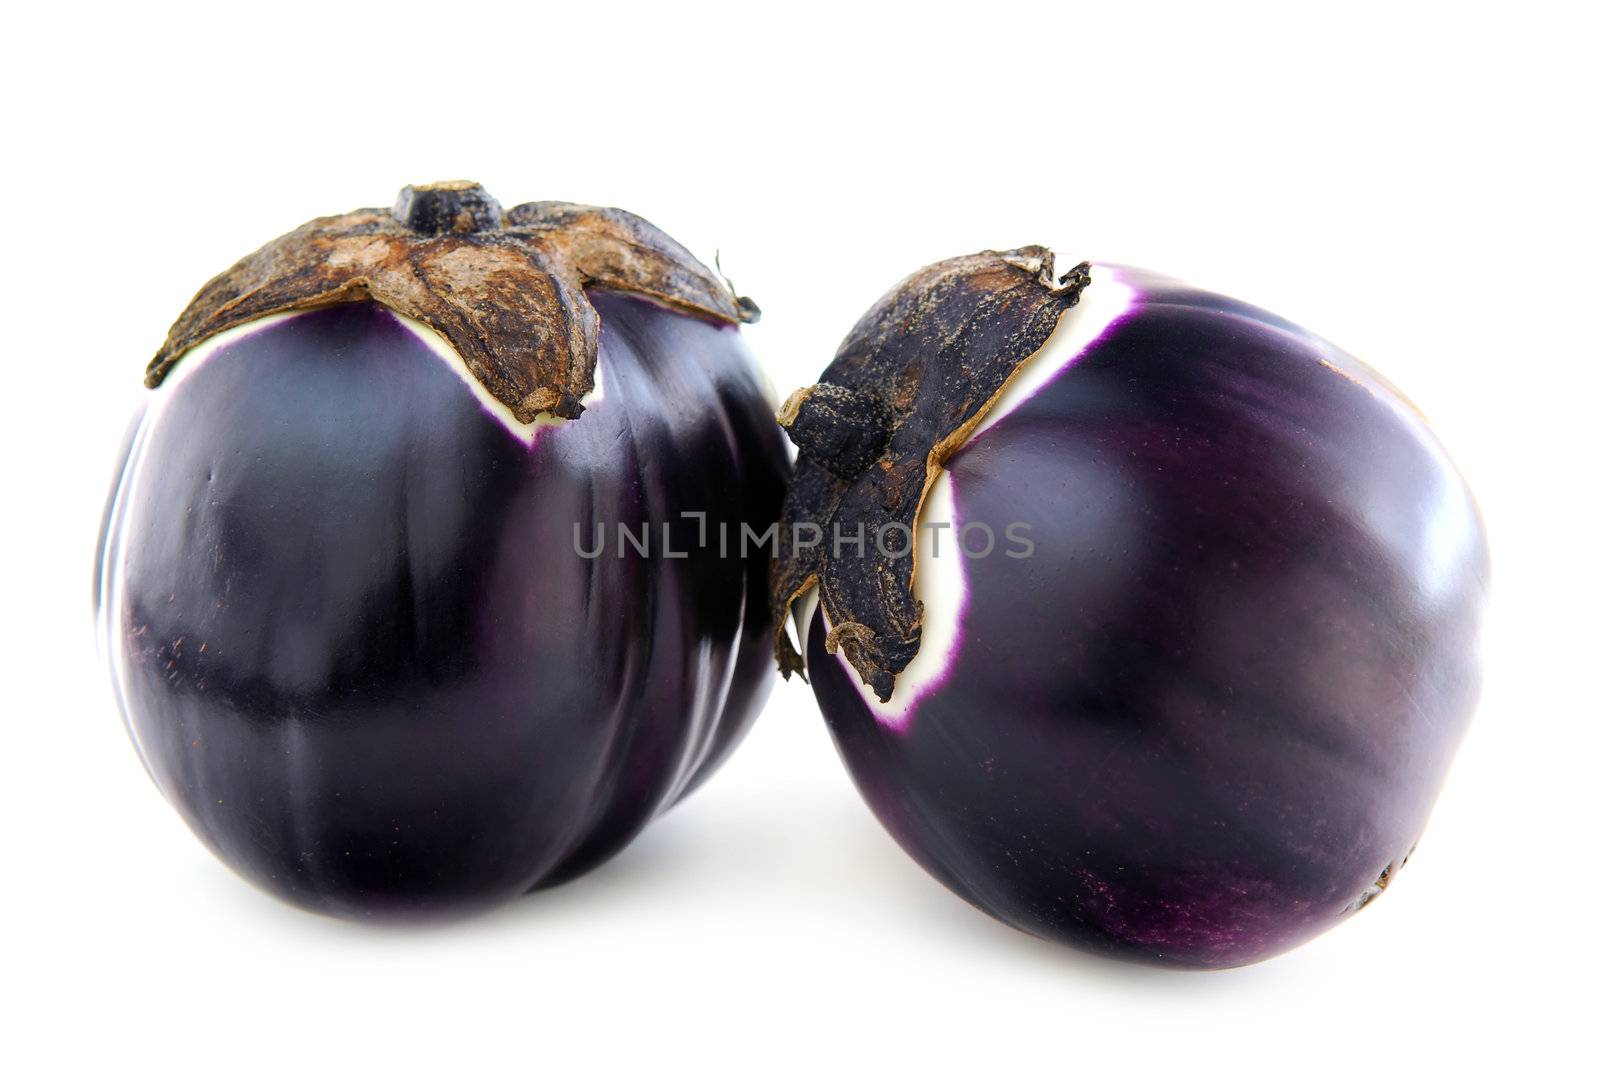 Eggplants by elenathewise